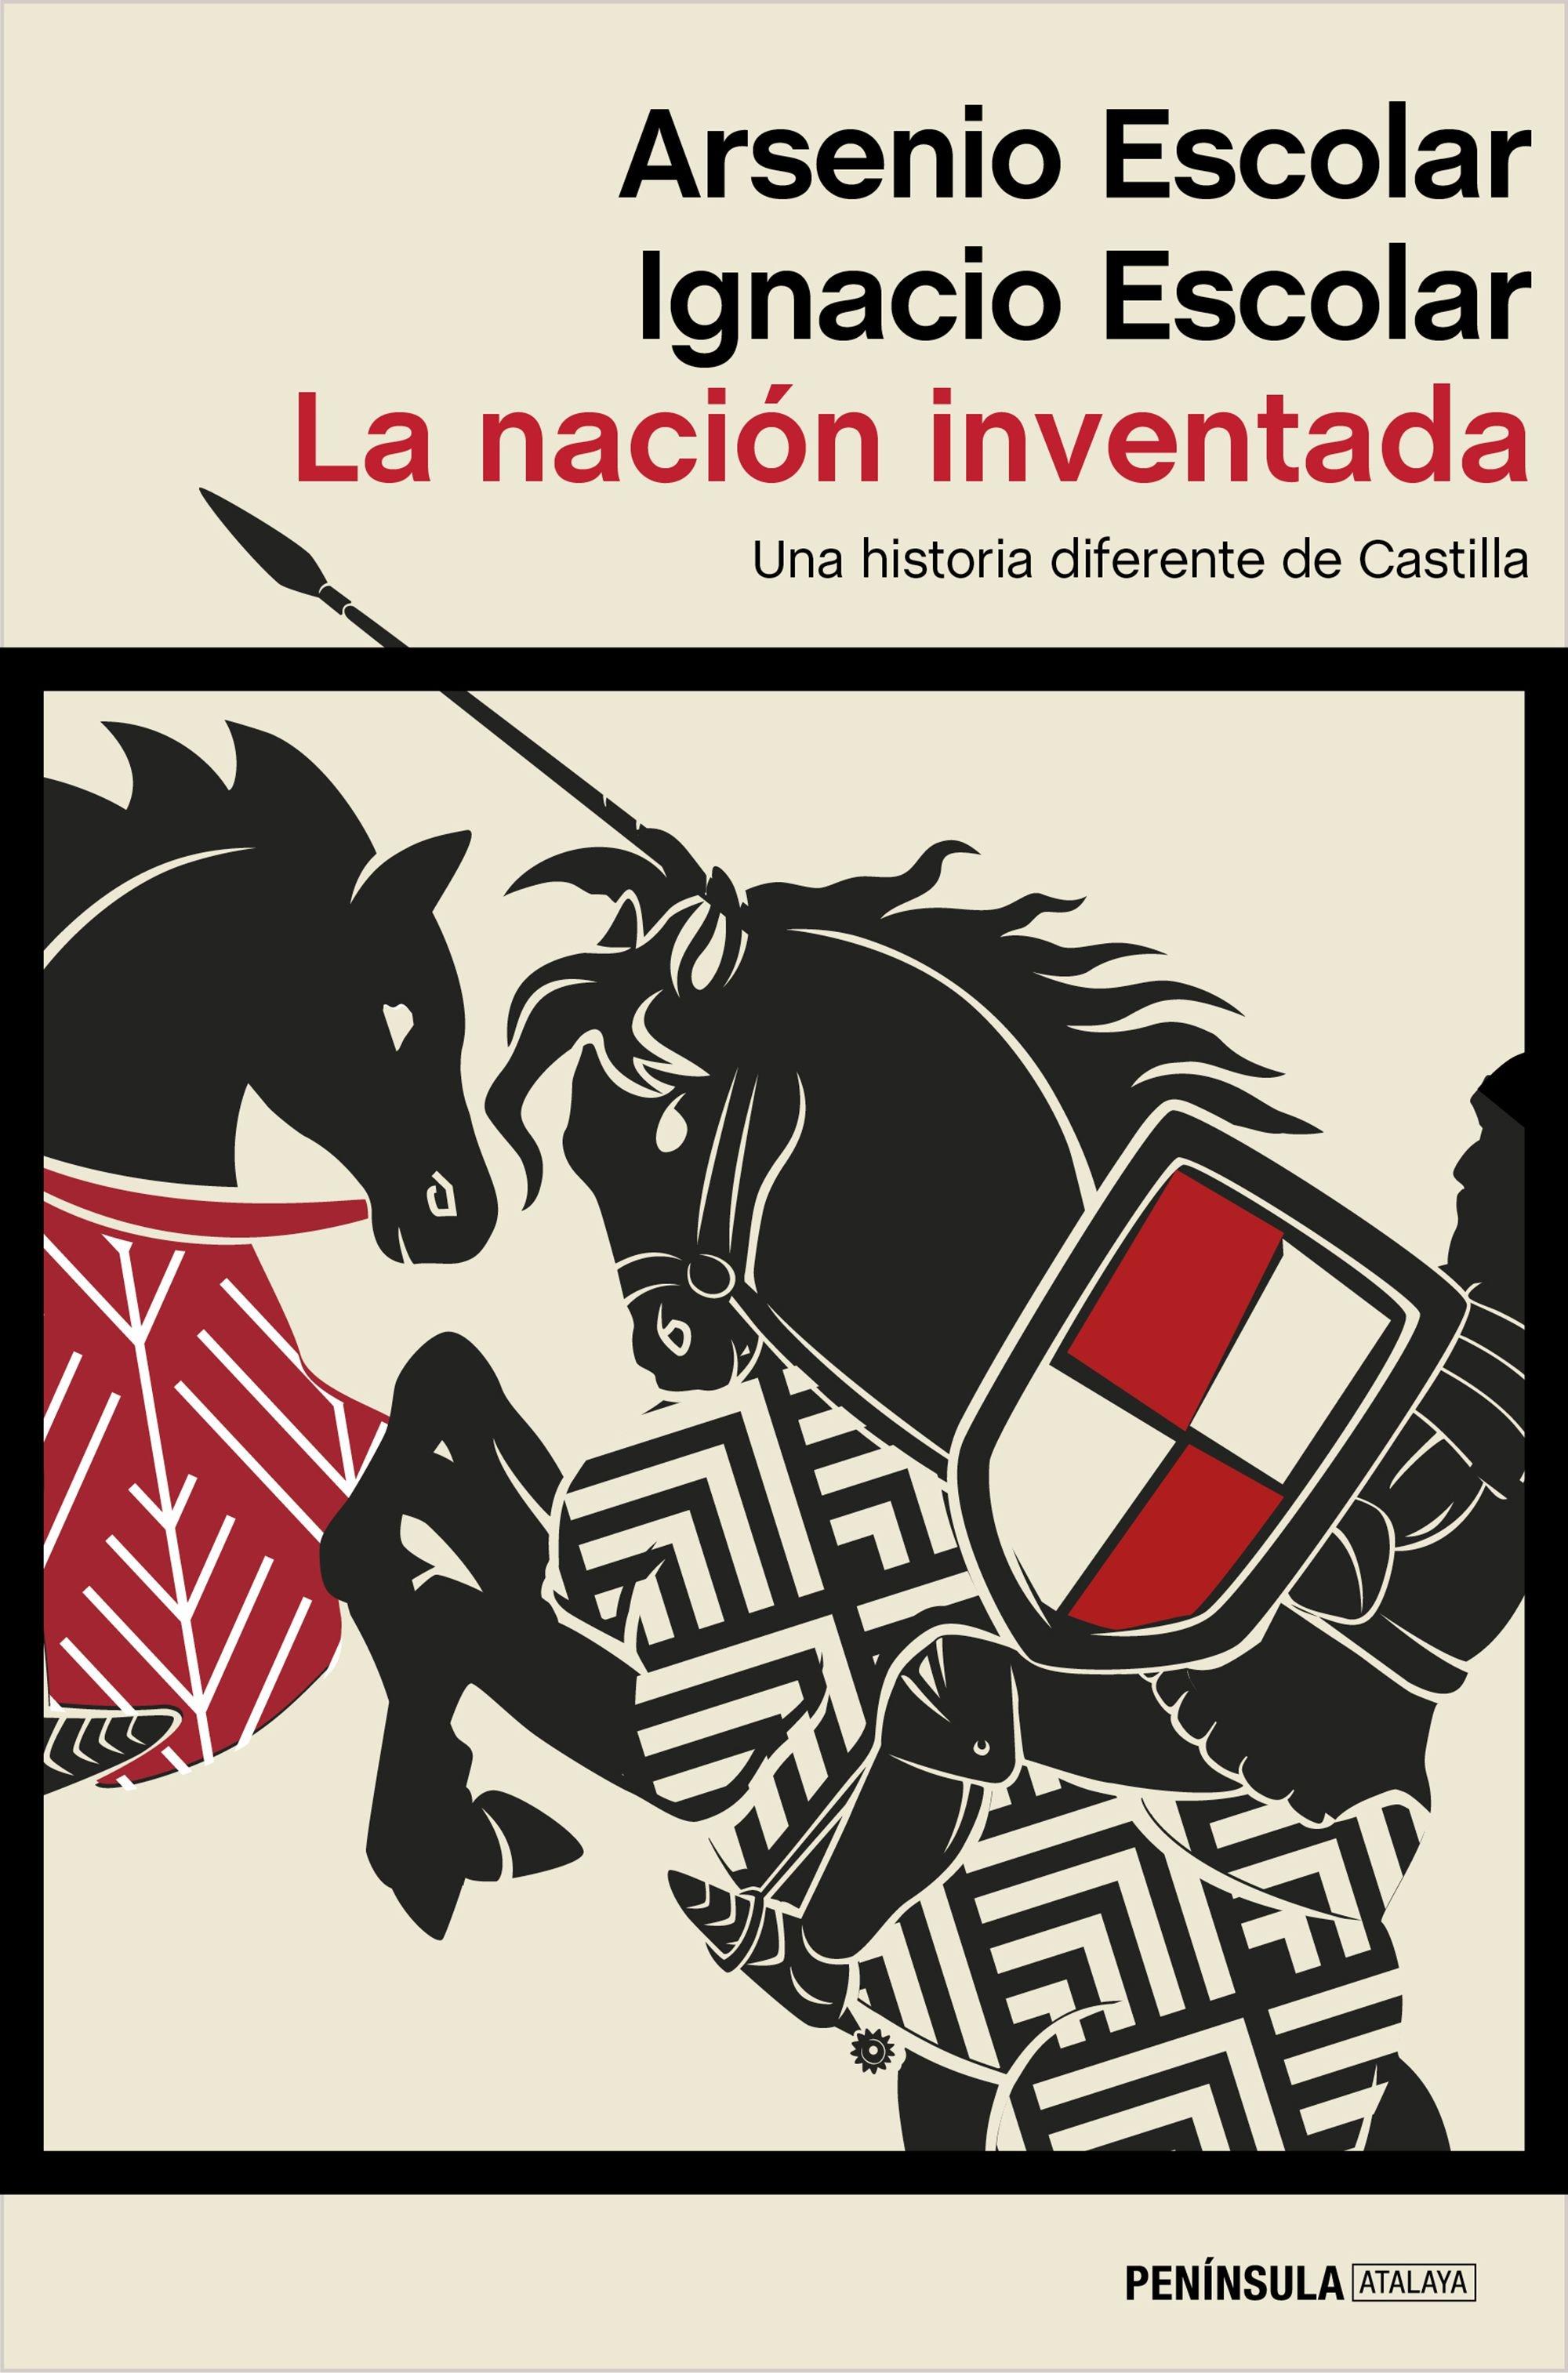 La nación inventada "Una historia diferente de Castilla"